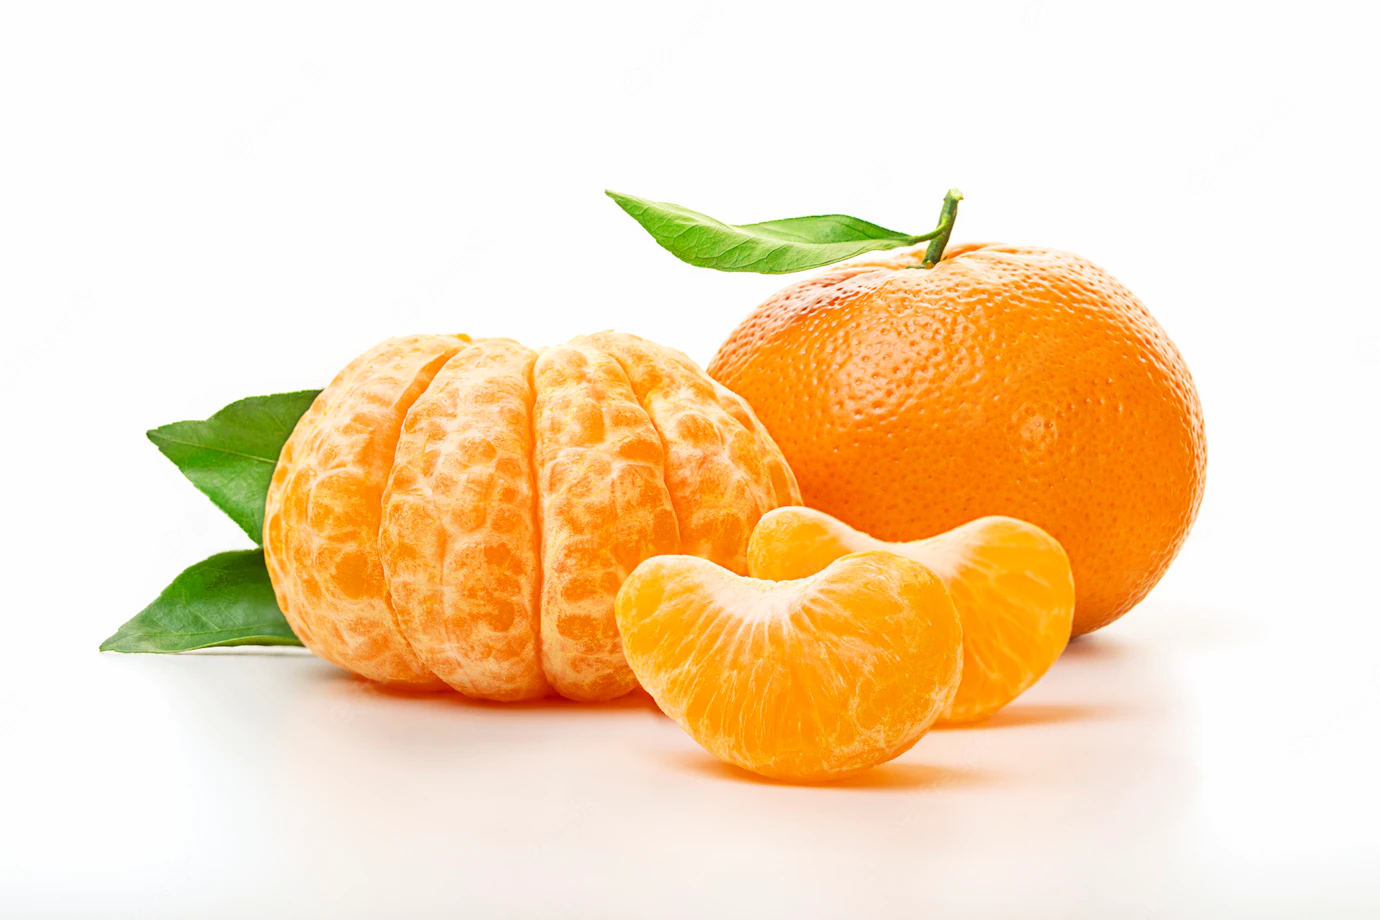 isolated-tangerines-half-peeled-tangerine-whole-mandarin-orange-fruit-with-green-leaves-isolated-white-background-close-up_95544-250